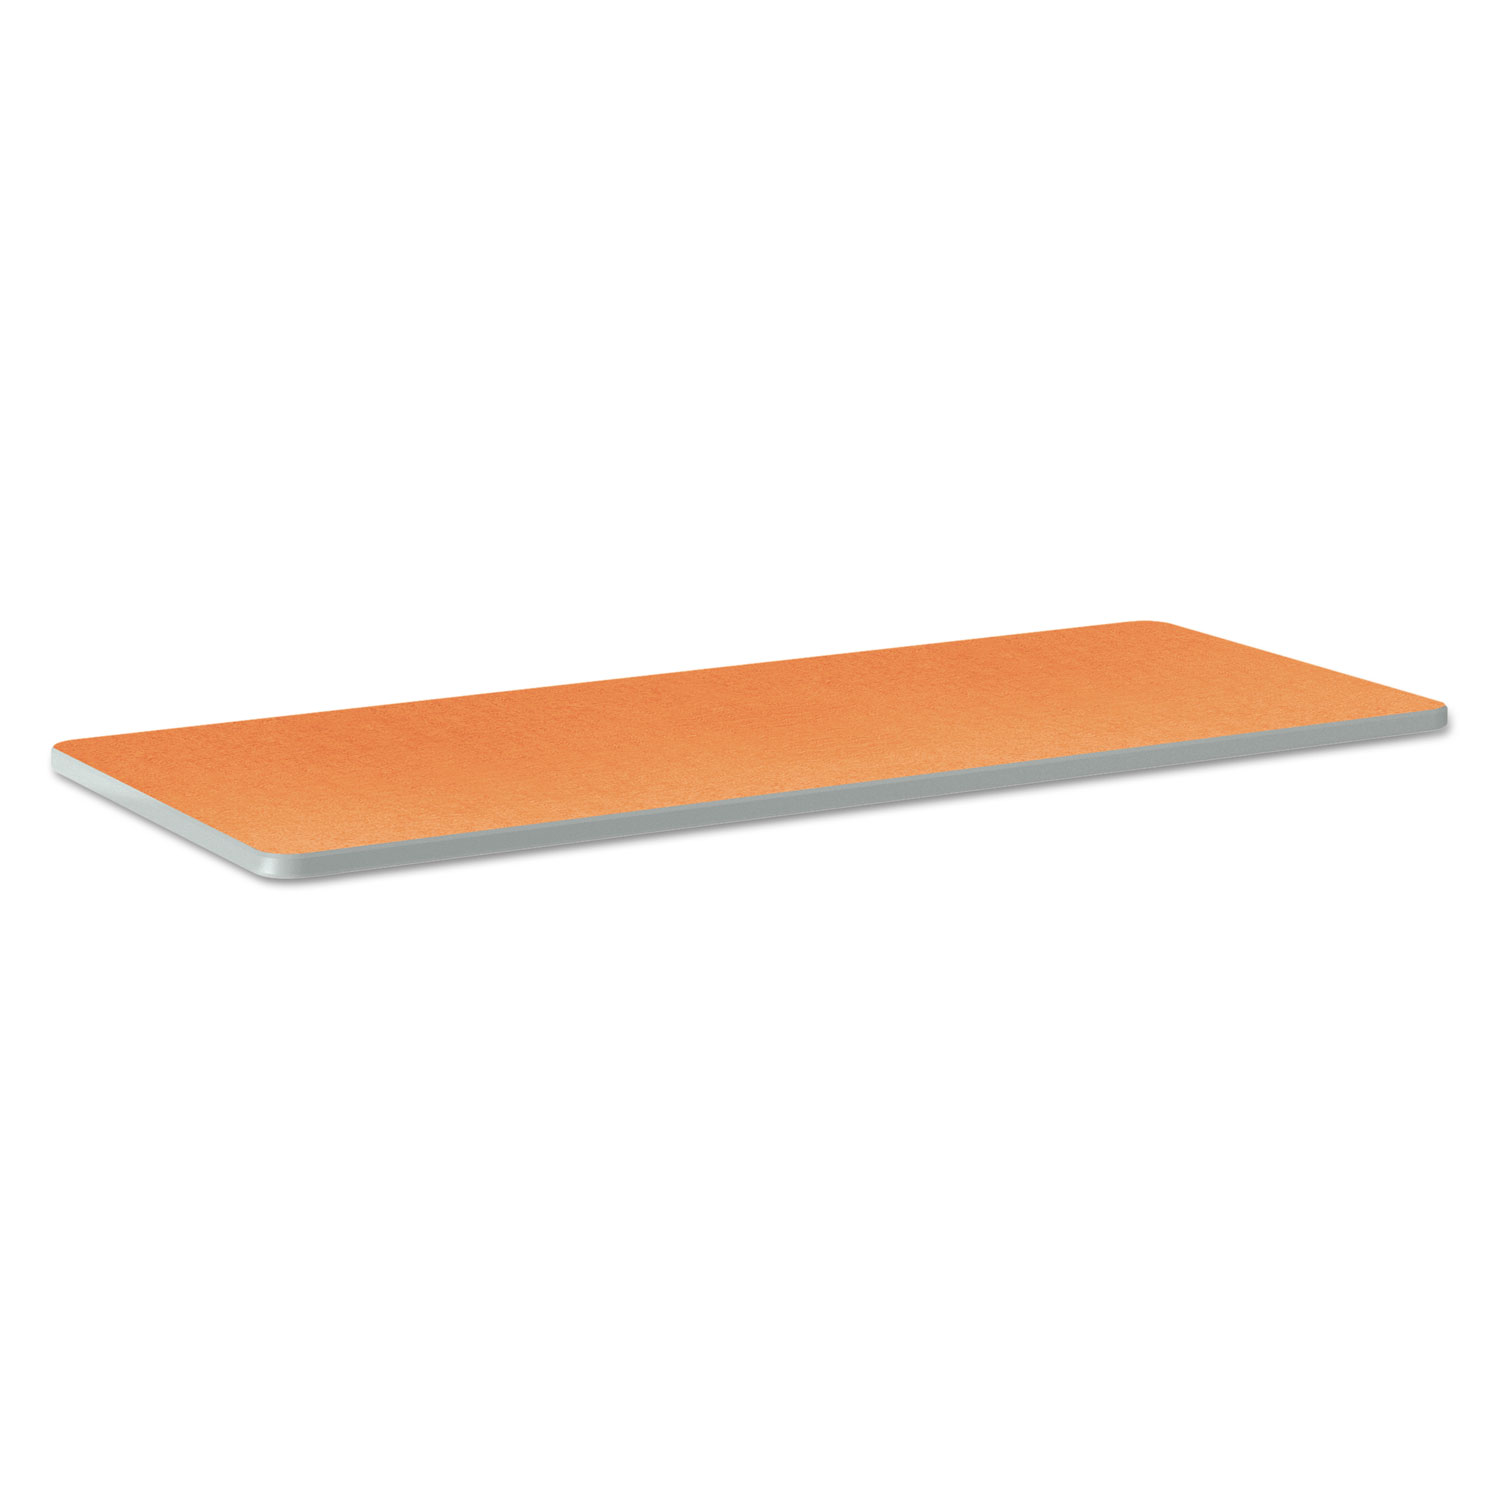  HON HETR2460E.N.LTG1.K Build Rectangle Shape Table Top, 60w x 24d, Tangerine (HONTR2460ETG1K) 